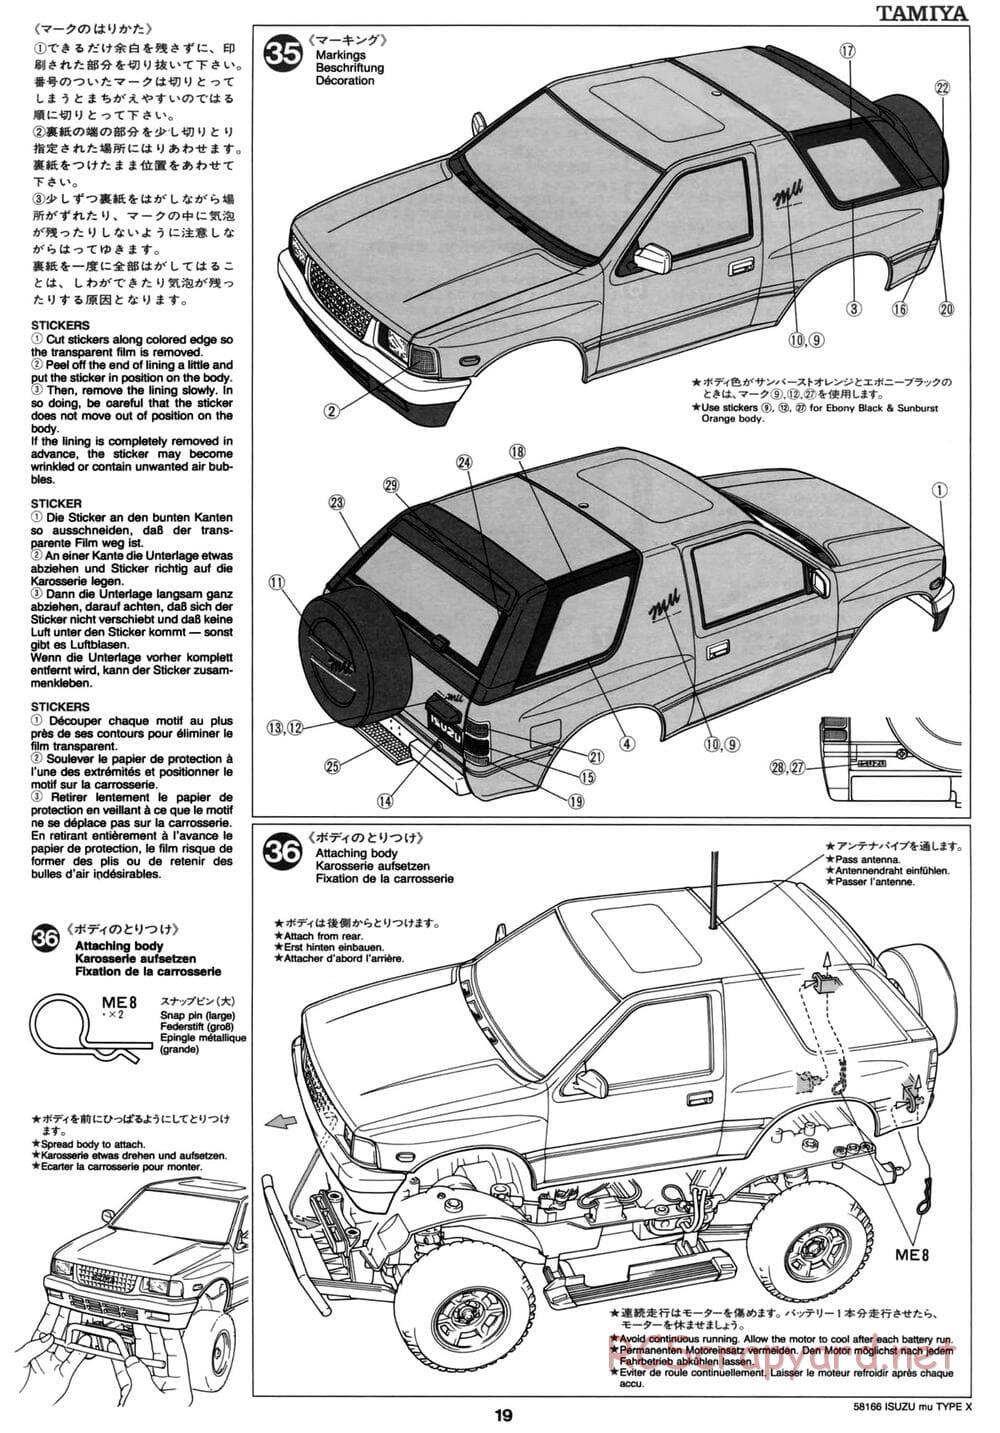 Tamiya - Isuzu Mu Type X - CC-01 Chassis - Manual - Page 19